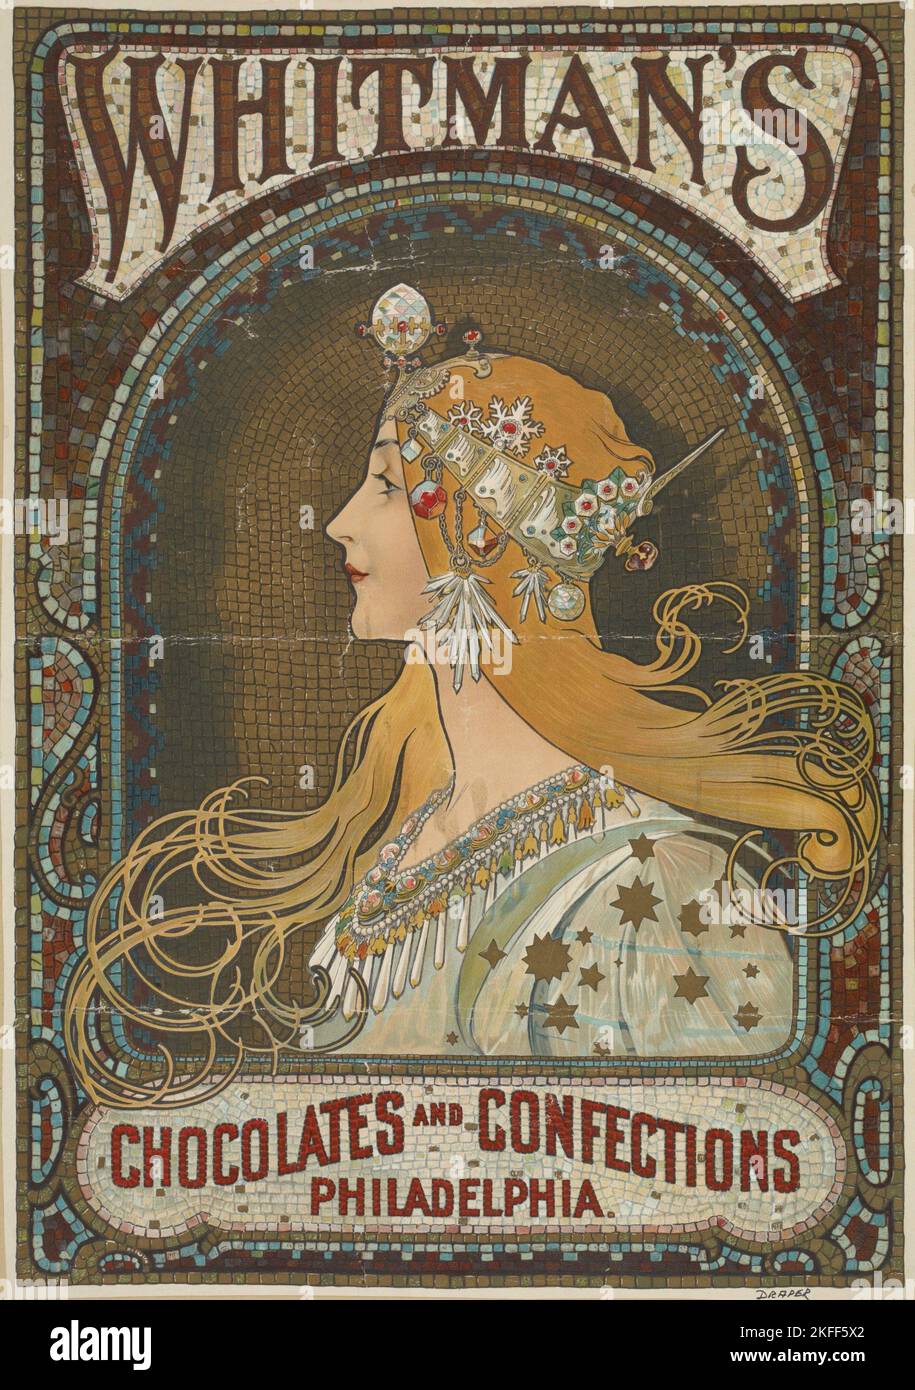 Whitman's chocolates and confections. Philadelphia., c1895 - 1917. Stock Photo